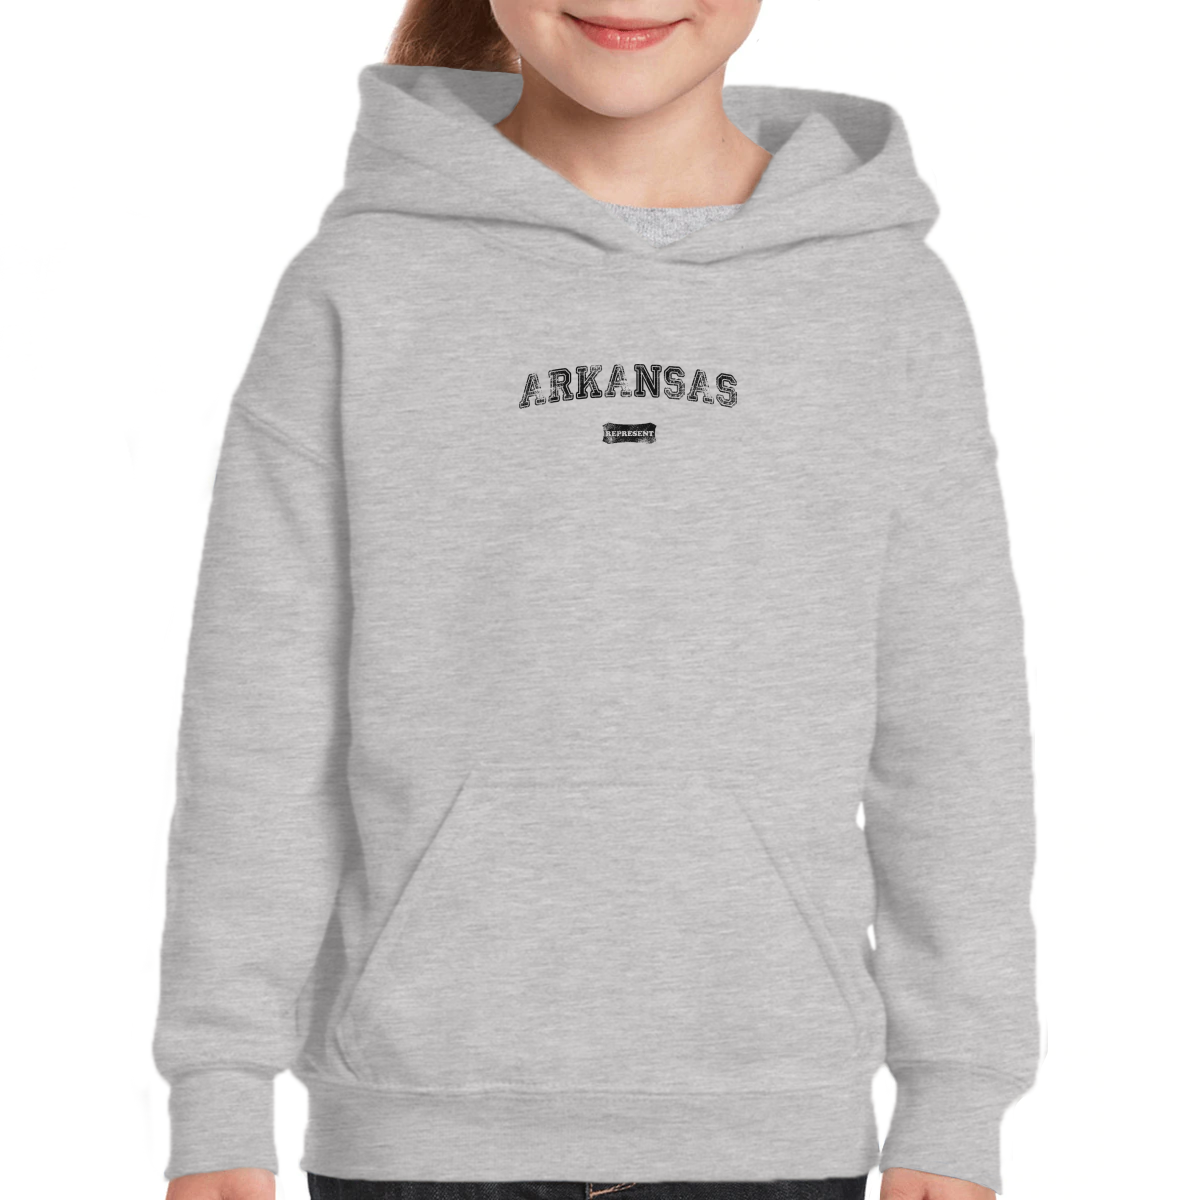 Arkansas Represent Kids Hoodie | Gray